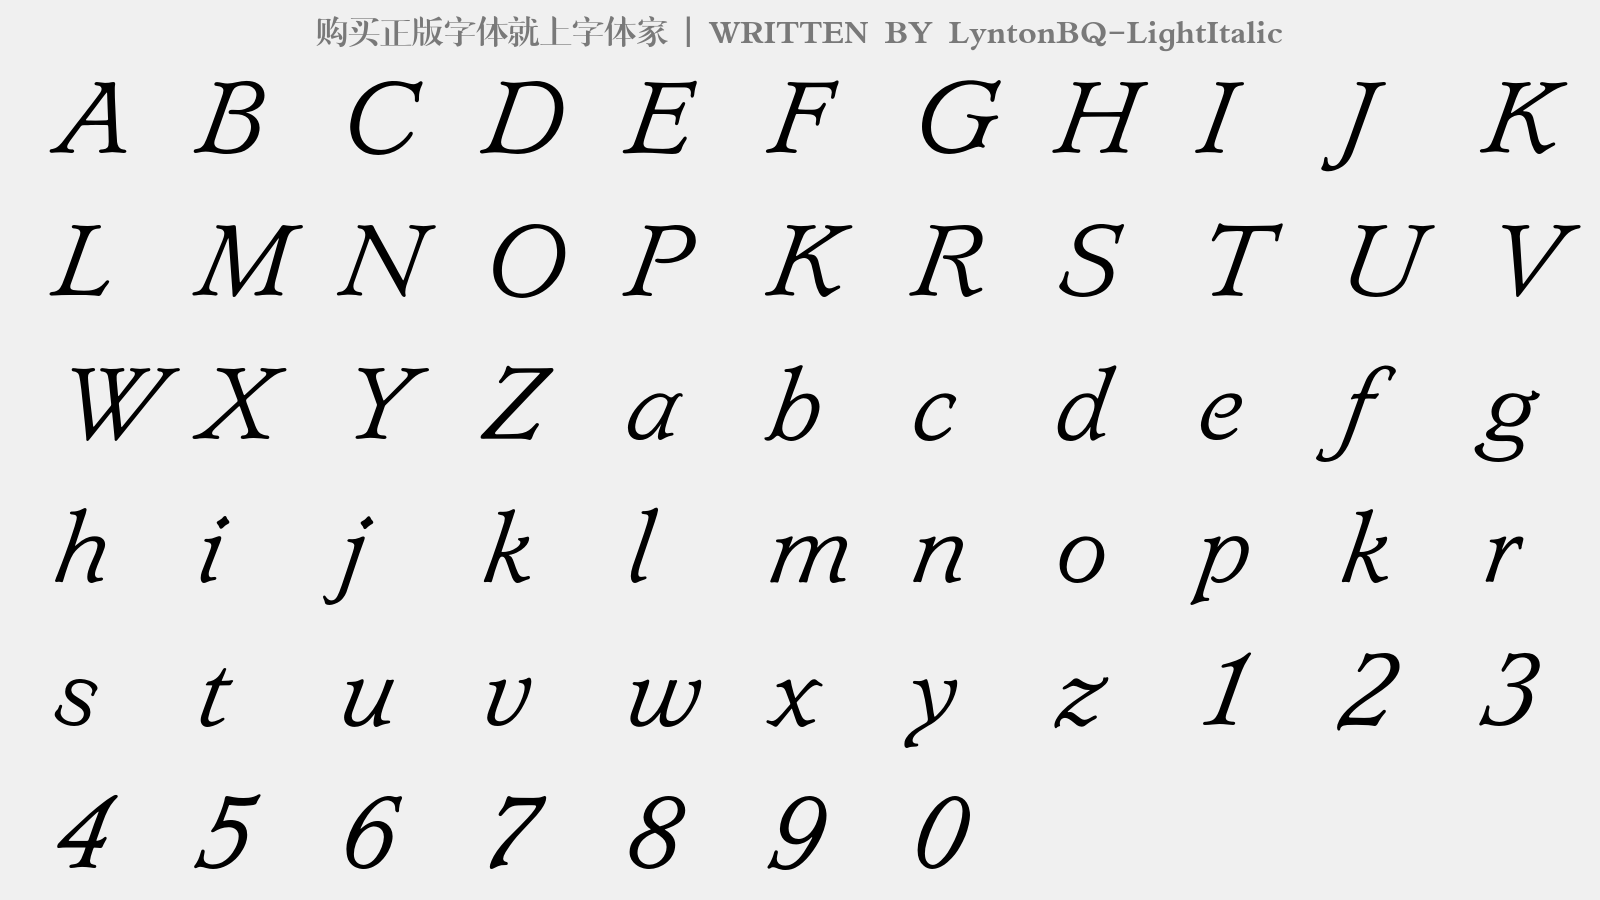 LyntonBQ-LightItalic - 大写字母/小写字母/数字